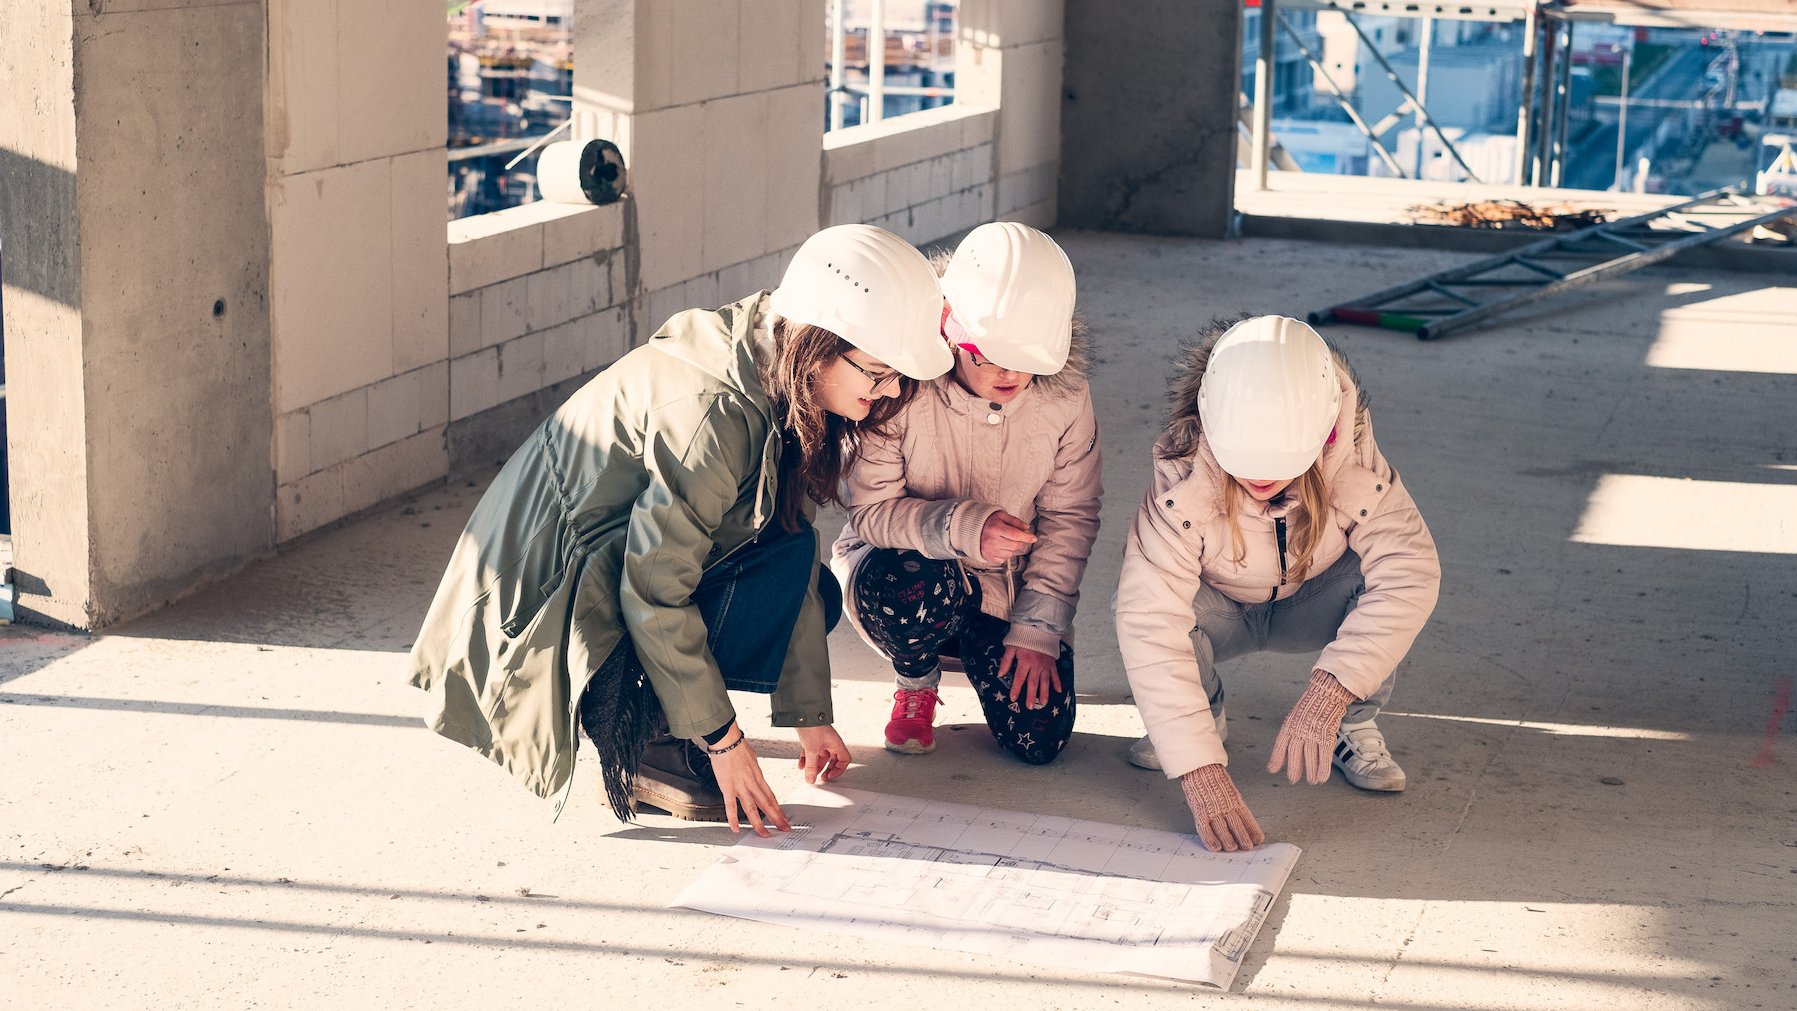 3 junge Frauen knien auf einem Bauplan. Sie befinden sich auf einer Baustelle und tragen weiße Bauhelme.